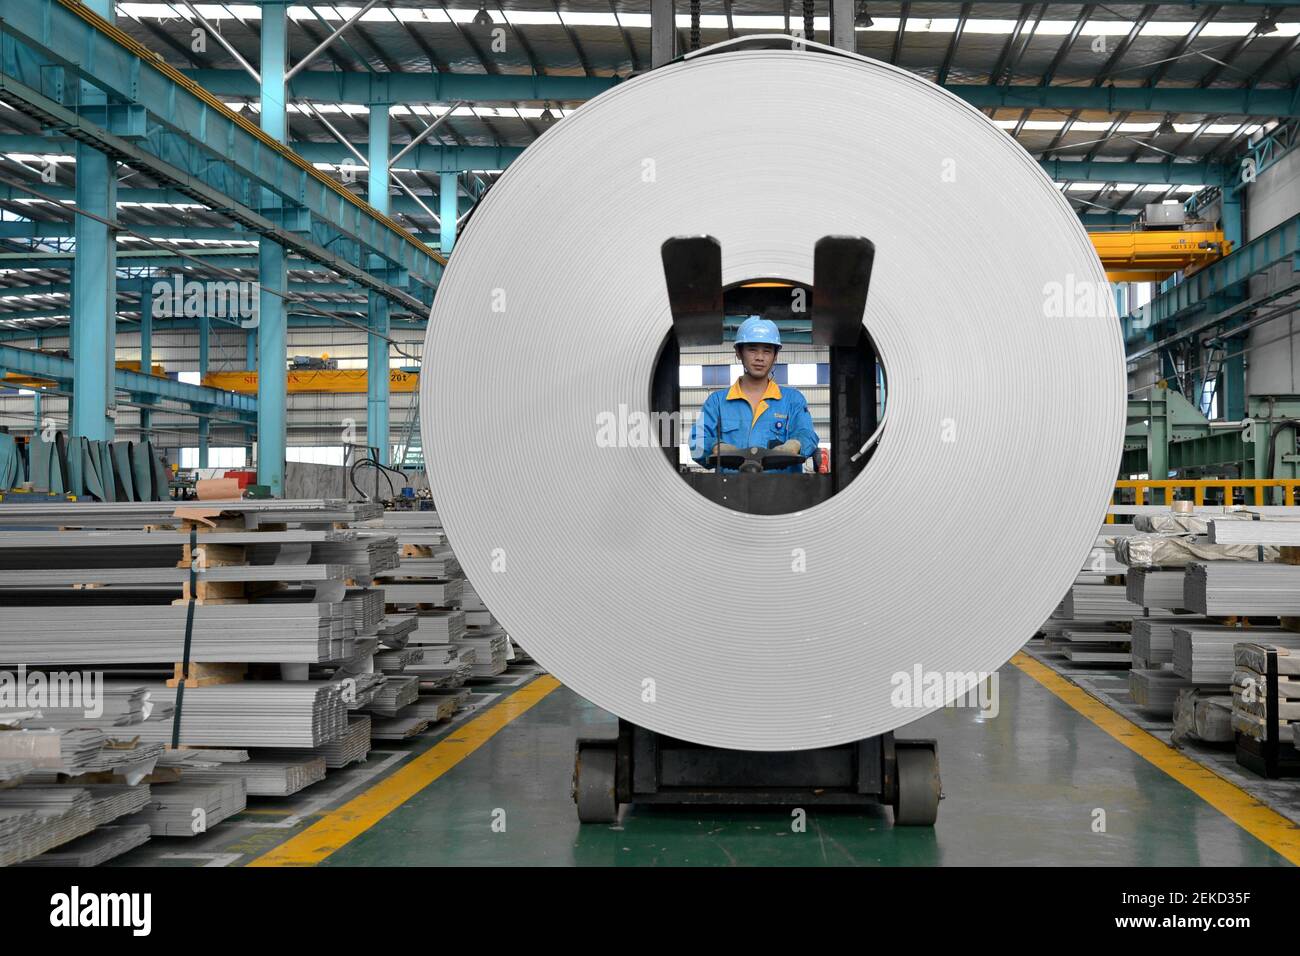 WUXI, CHINA - 11 DE AGOSTO de 2020 - un trabajador de una empresa de hierro  y acero levanta productos de acero inoxidable plano. Ciudad de Wuxi,  Provincia de Jiangsu, China, 11